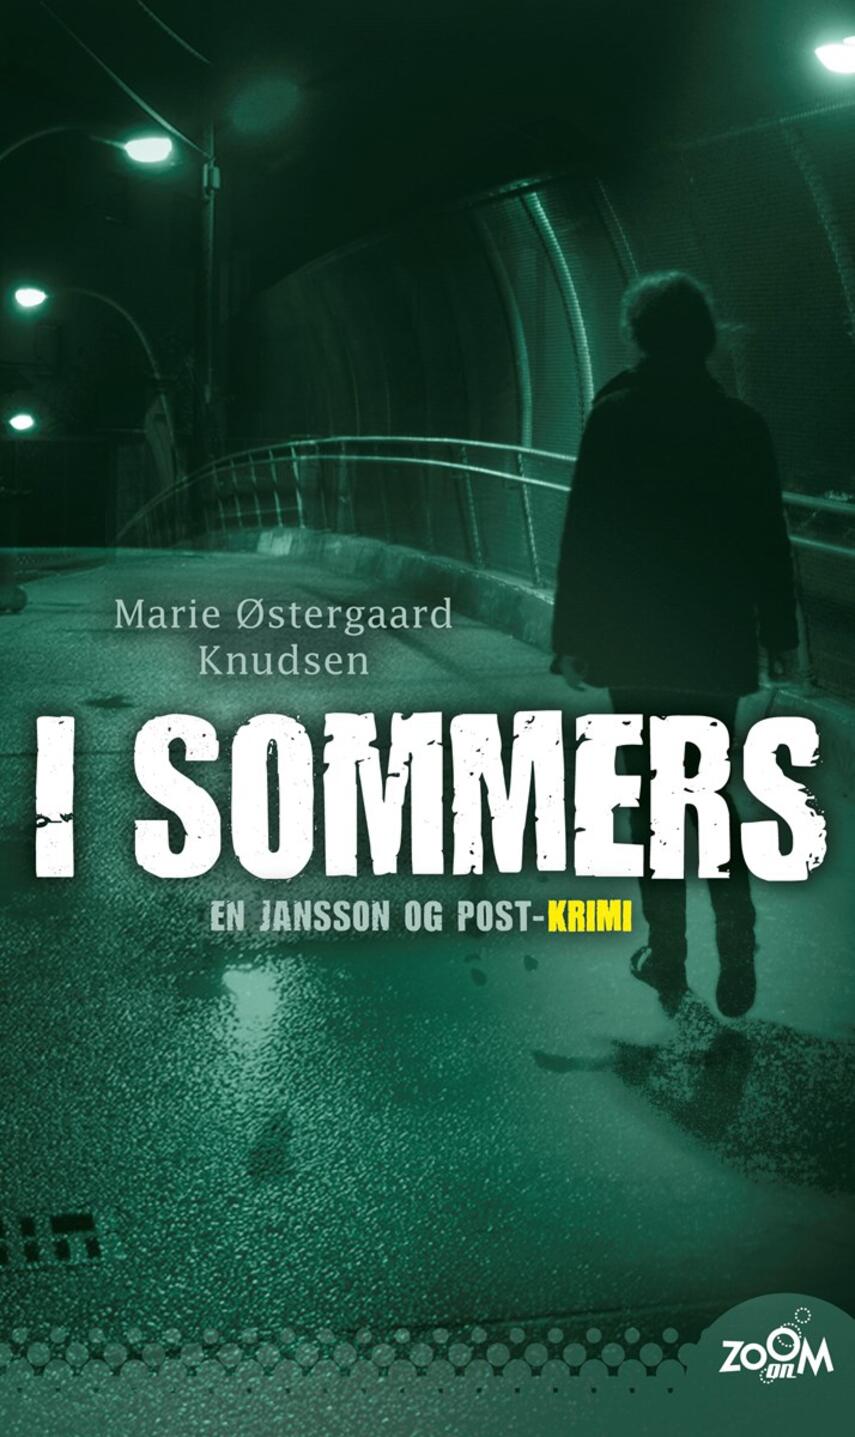 Marie Østergaard Knudsen: I sommers